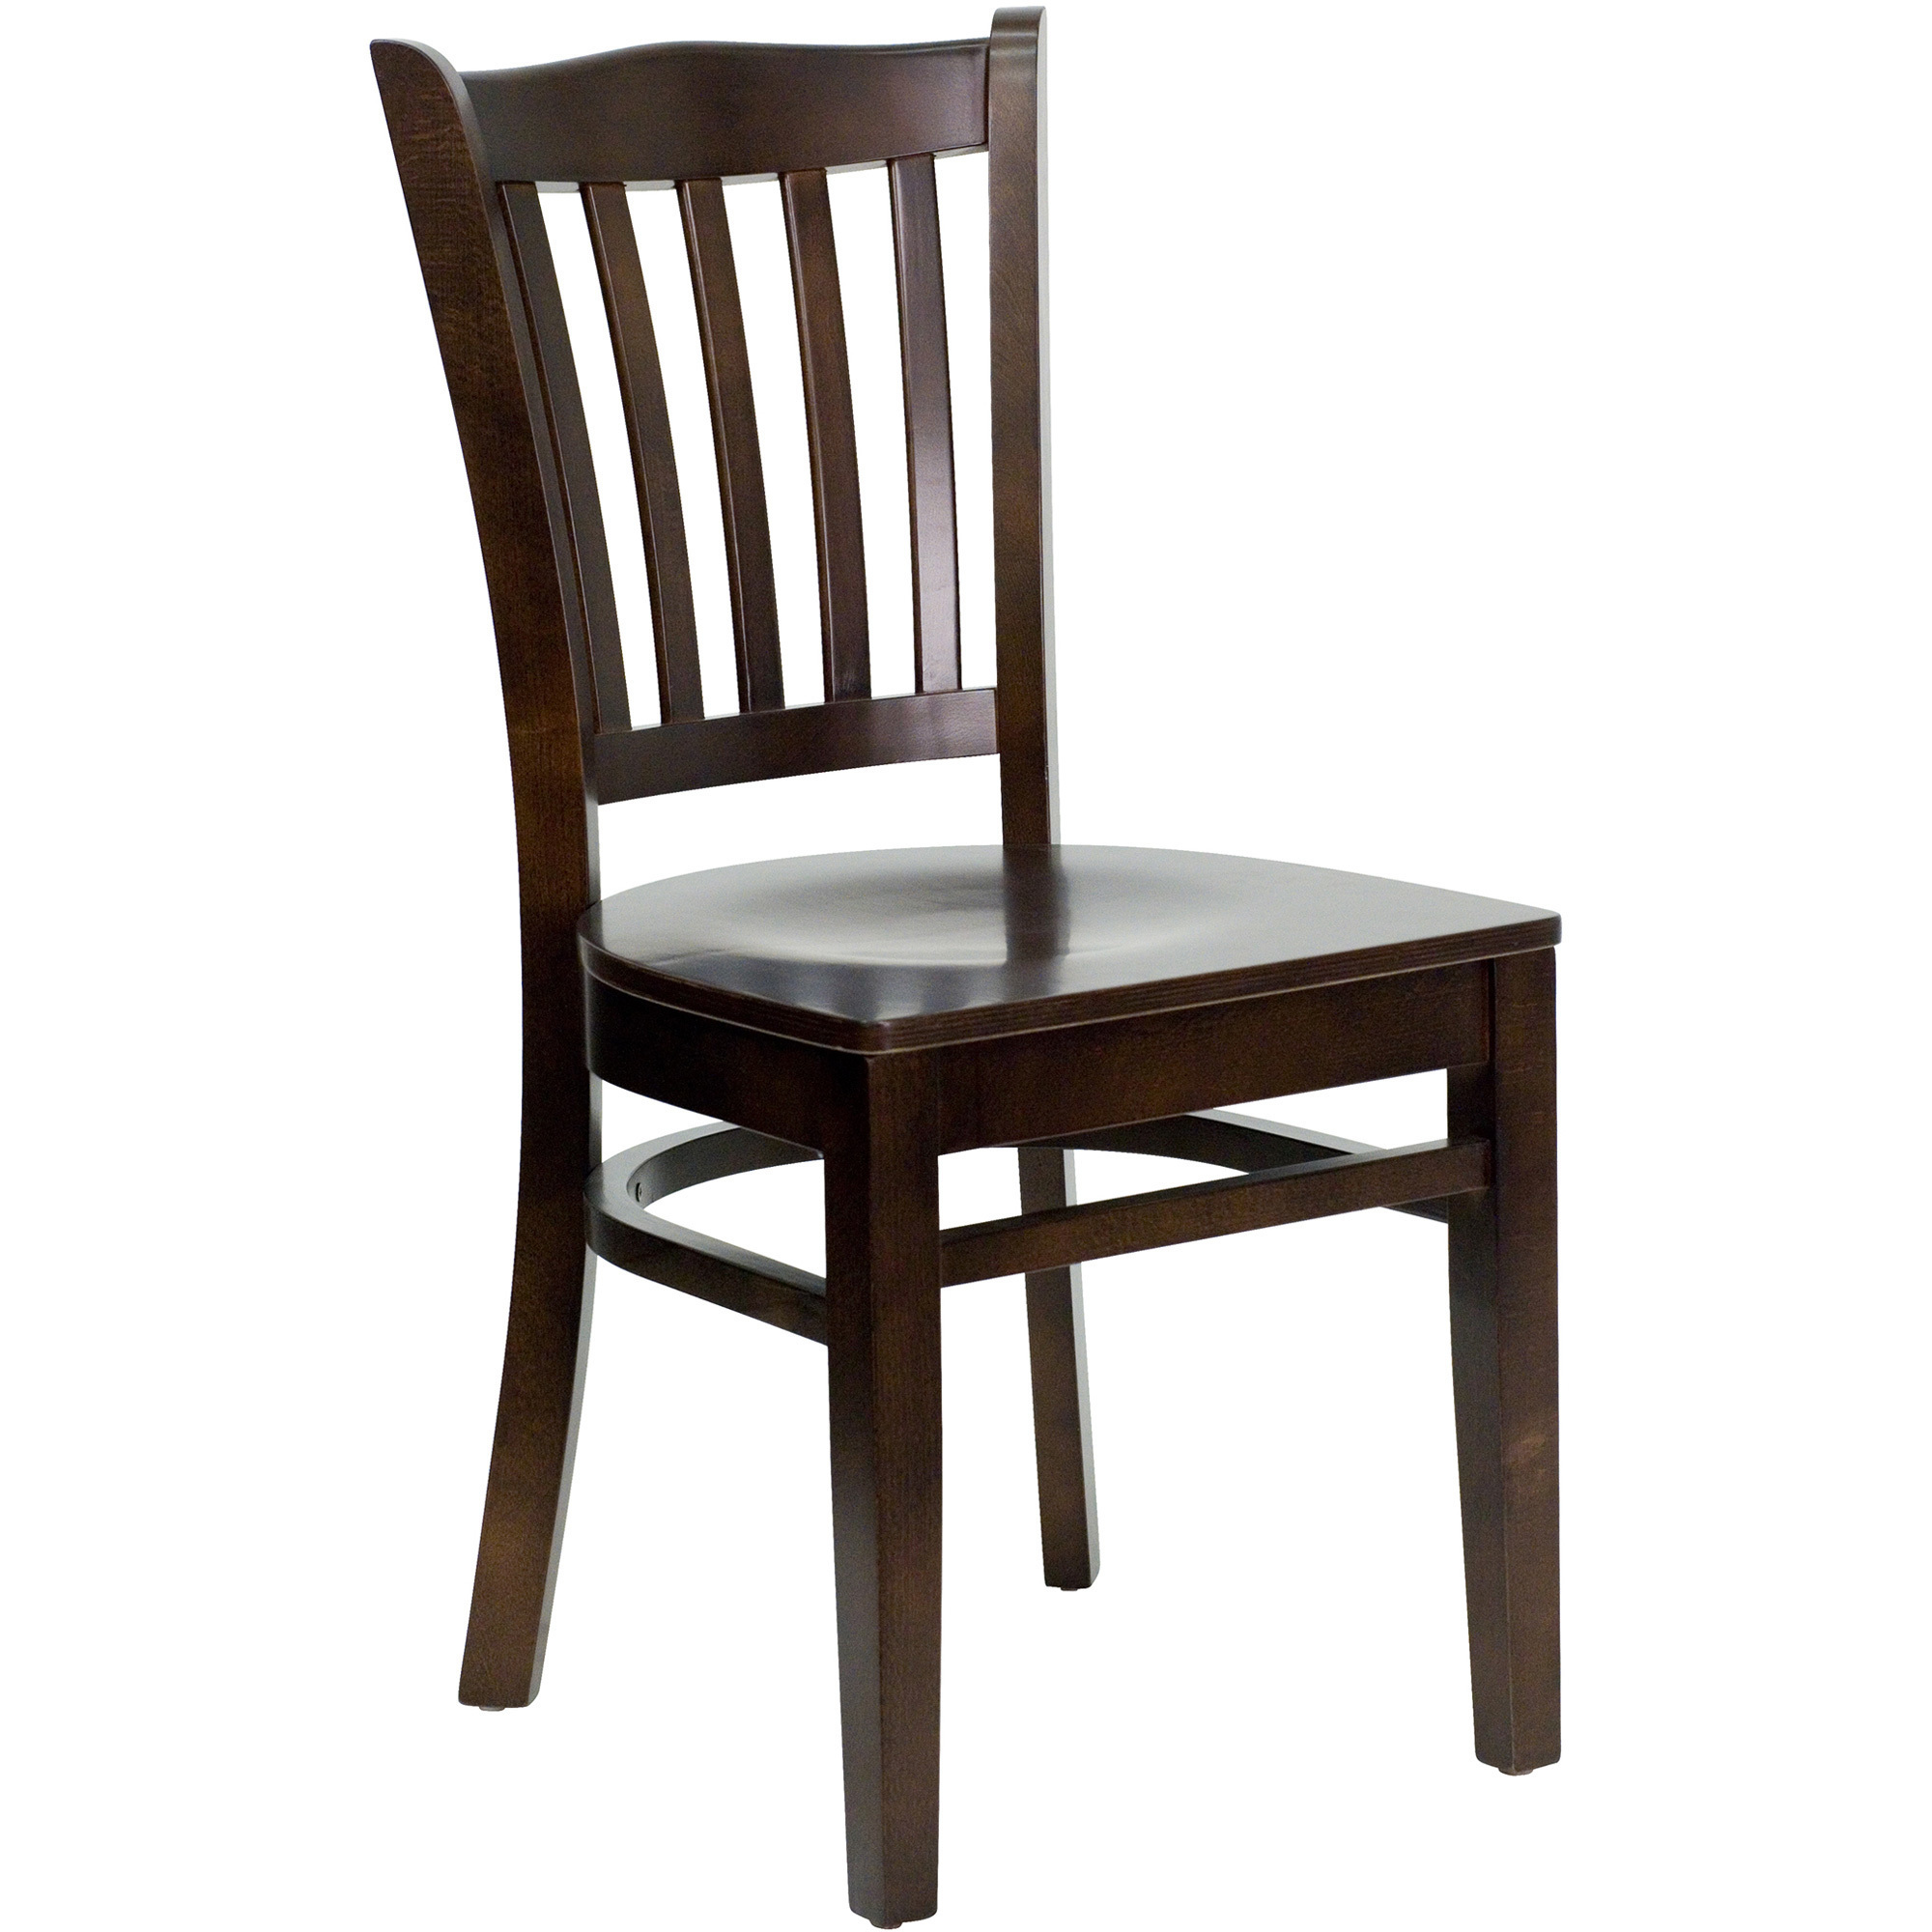 Wood Dining Chair with Slat Back — Walnut Finish, 16 3/4Inch W x 20 3/4Inch D x 34 1/2Inch H, Model - Flash Furniture XUDGW0008VRTWAL